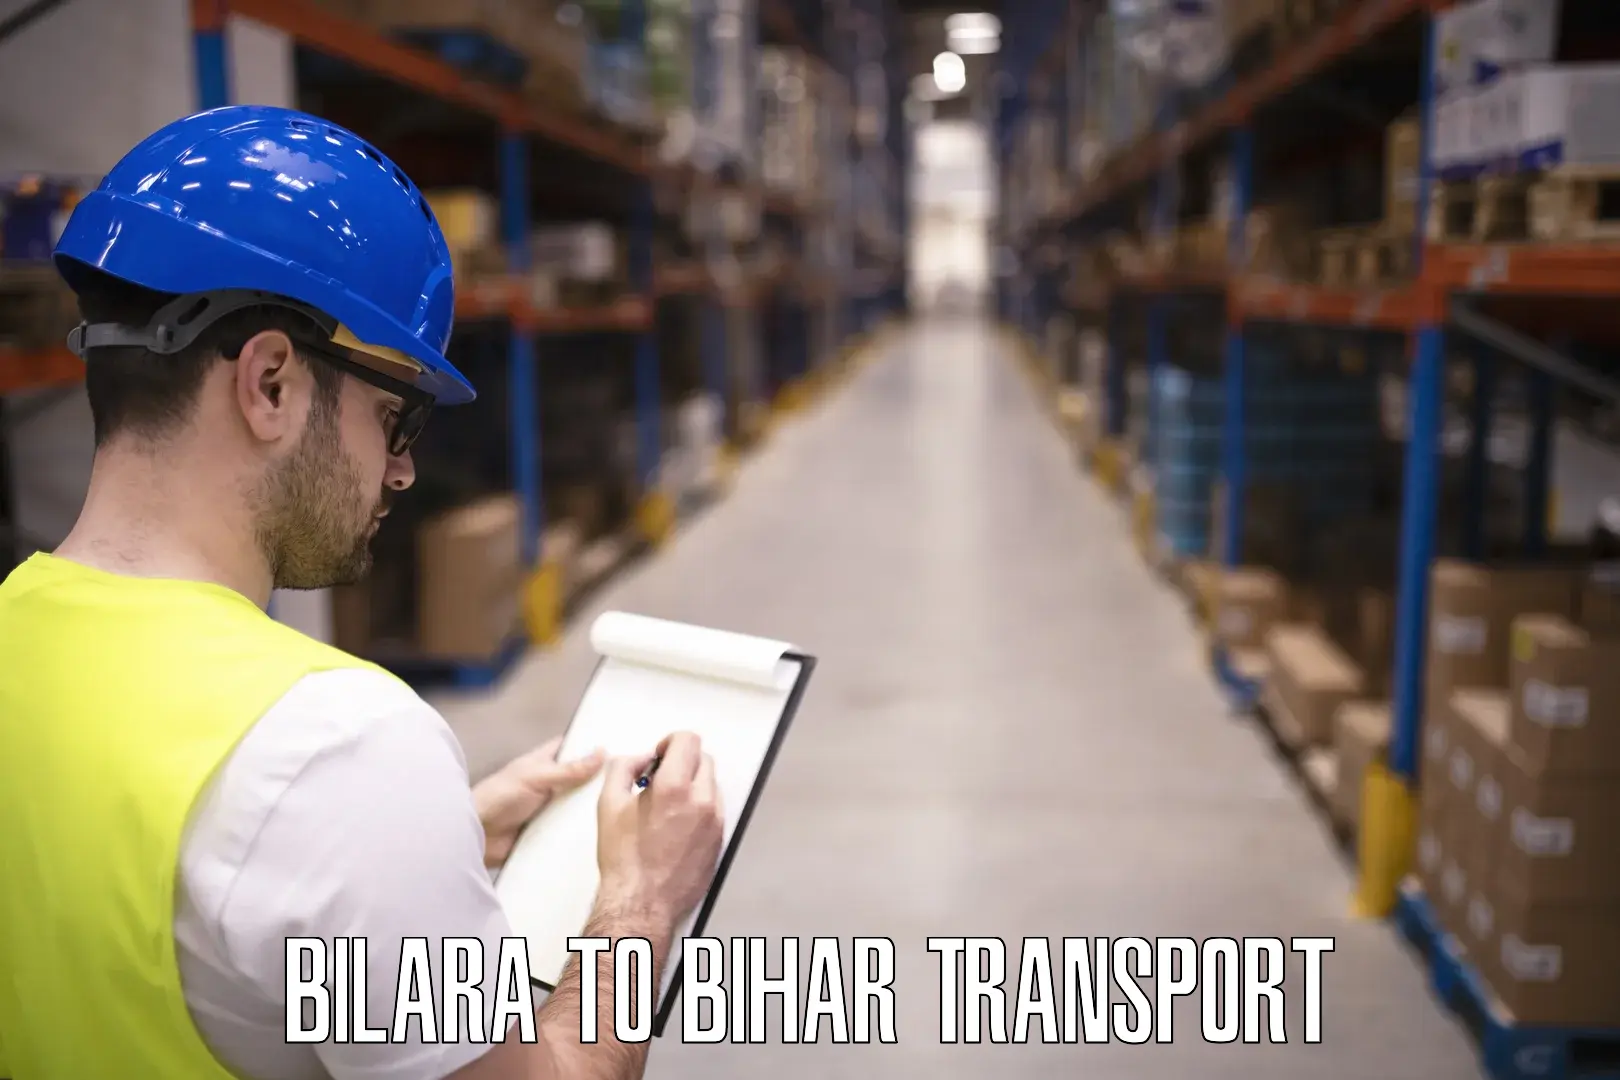 Transportation solution services in Bilara to Bihar